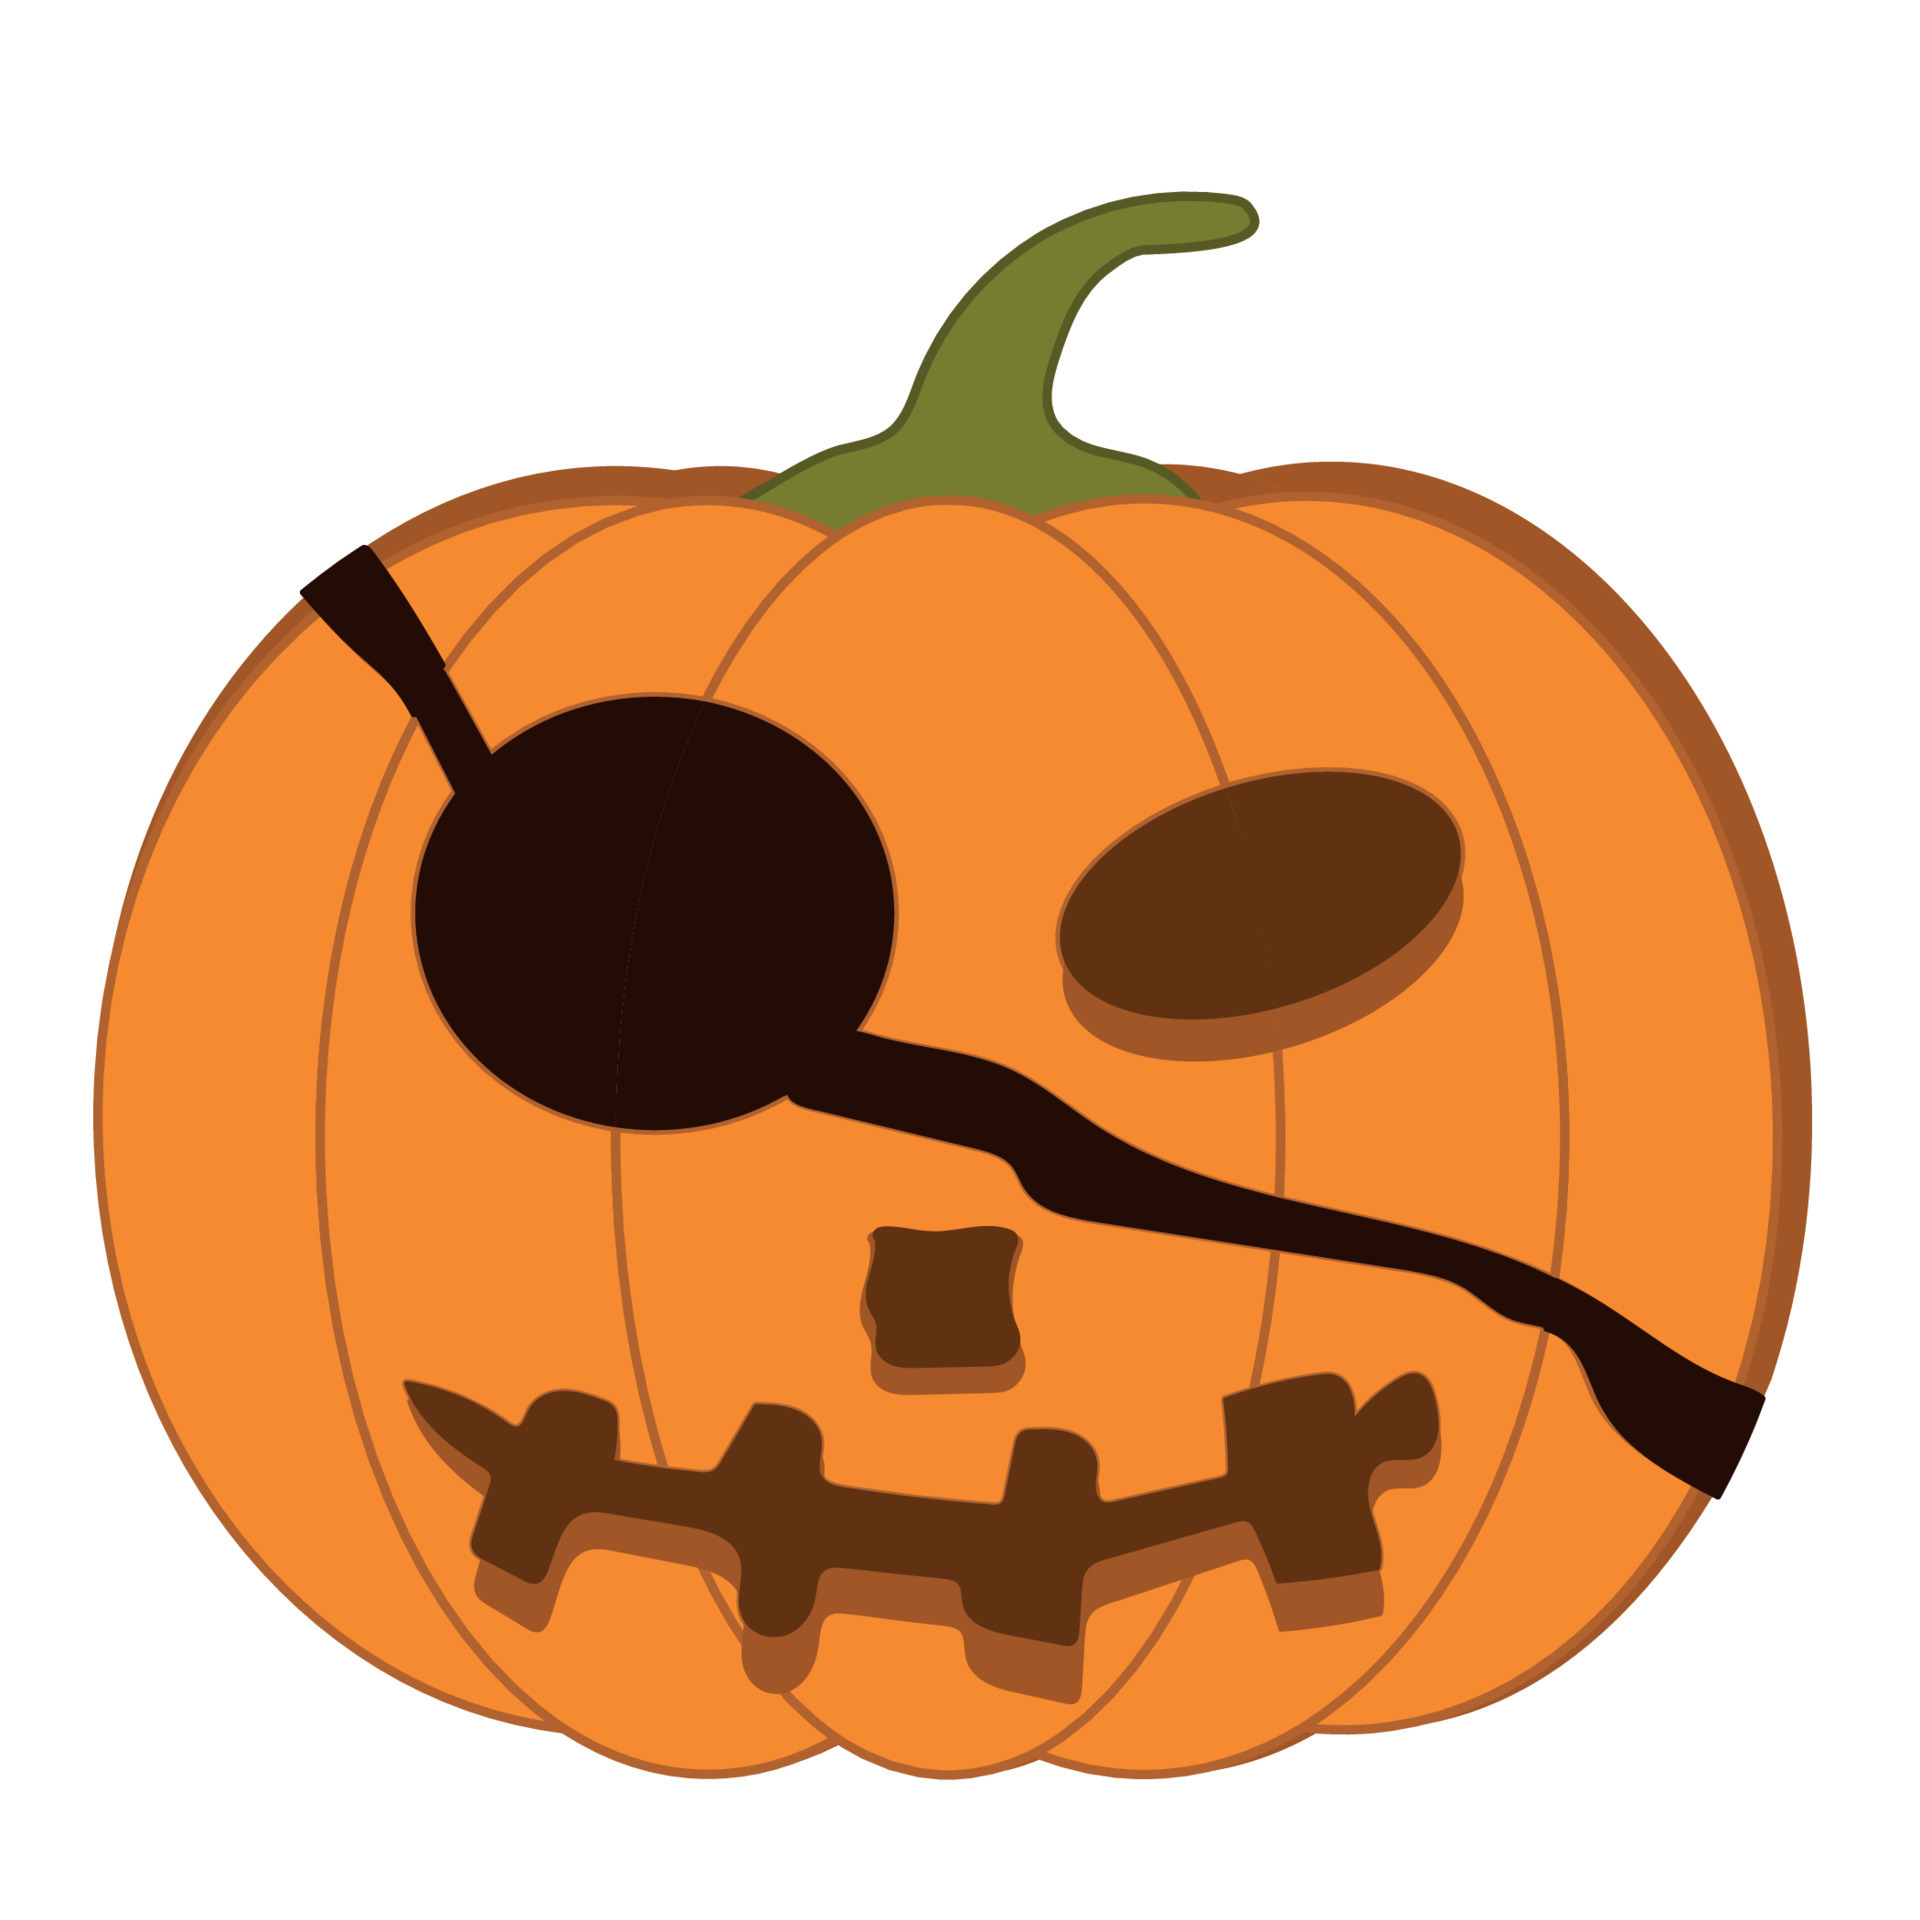 Cara assustadora do halloween - ícones de dia das bruxas grátis